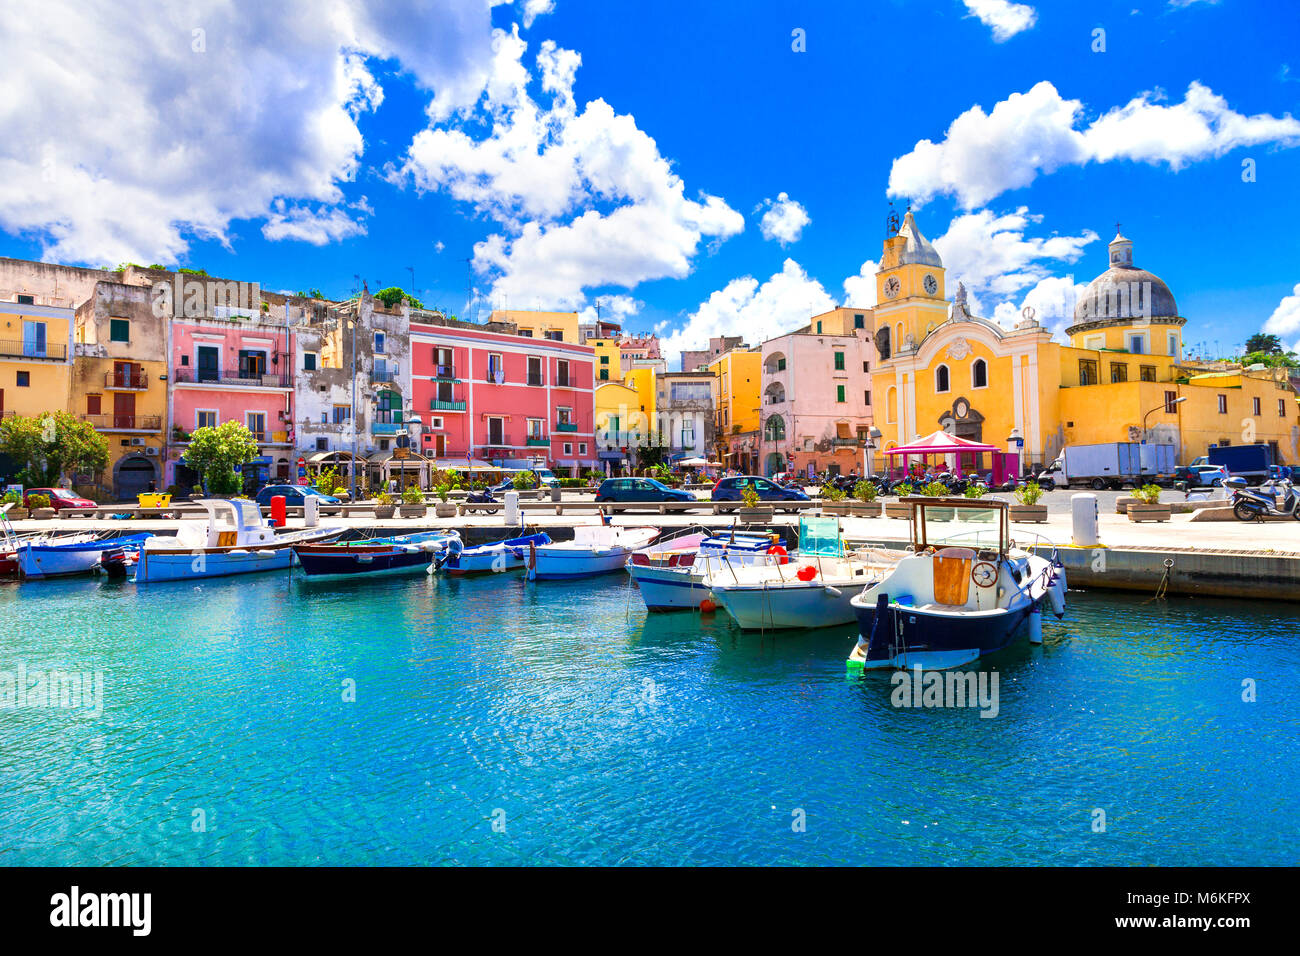 Bellissima isola di Procida,vista con case colorate e tradizionali barche da pesca,Campania,l'Italia. Foto Stock